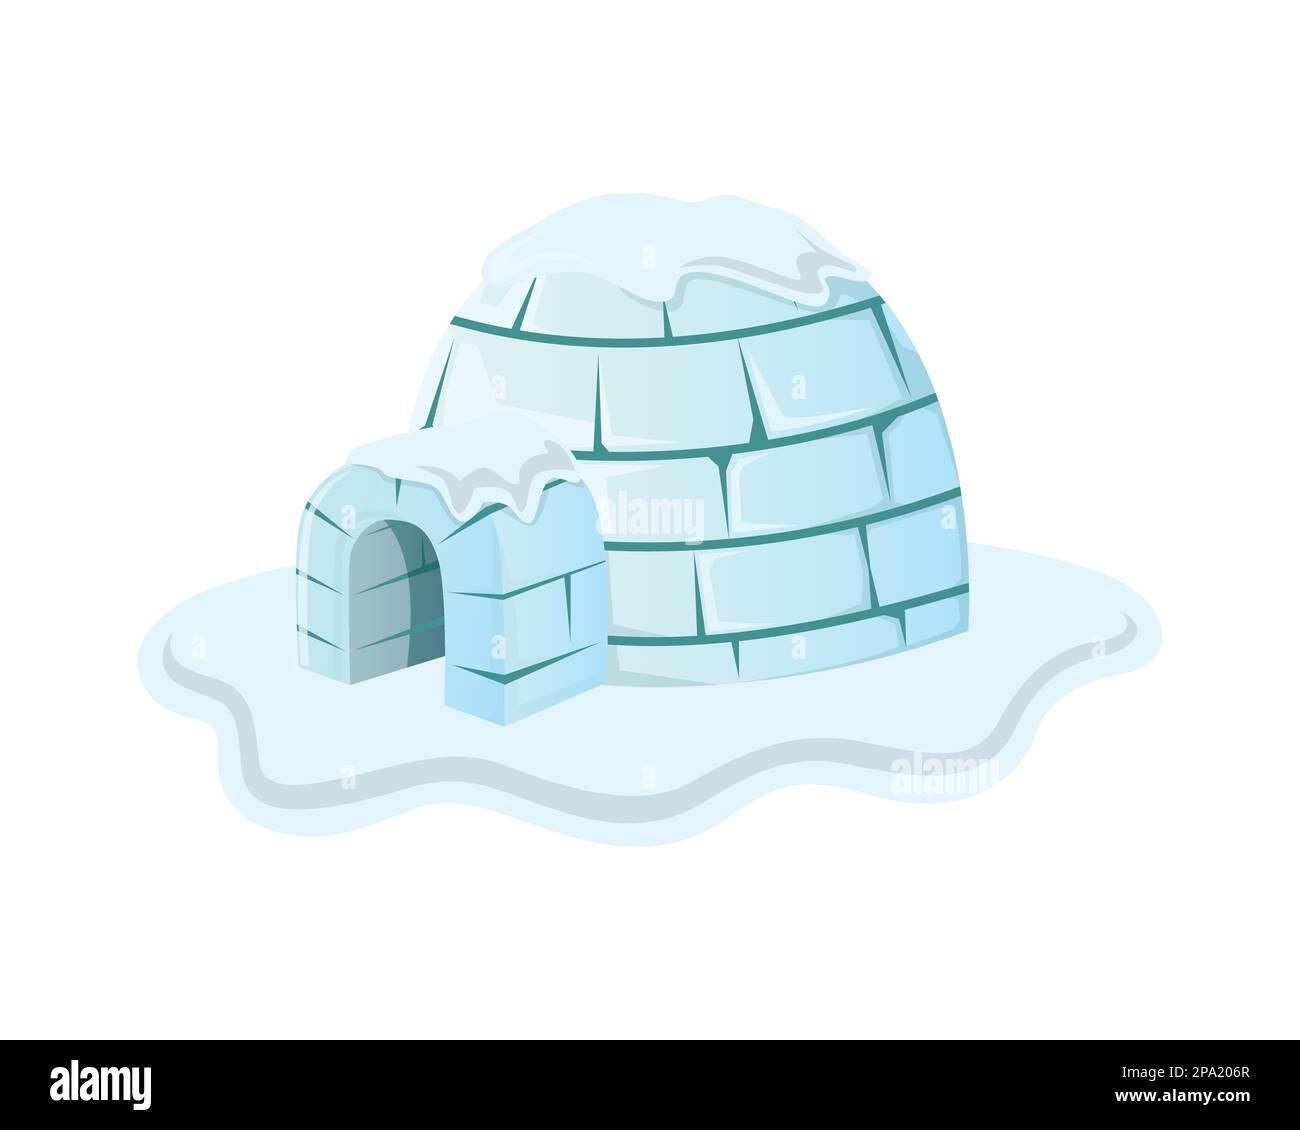 Igloo House couverte de neige Illustration visualisée avec l'illustration semi-détaillée Illustration de Vecteur